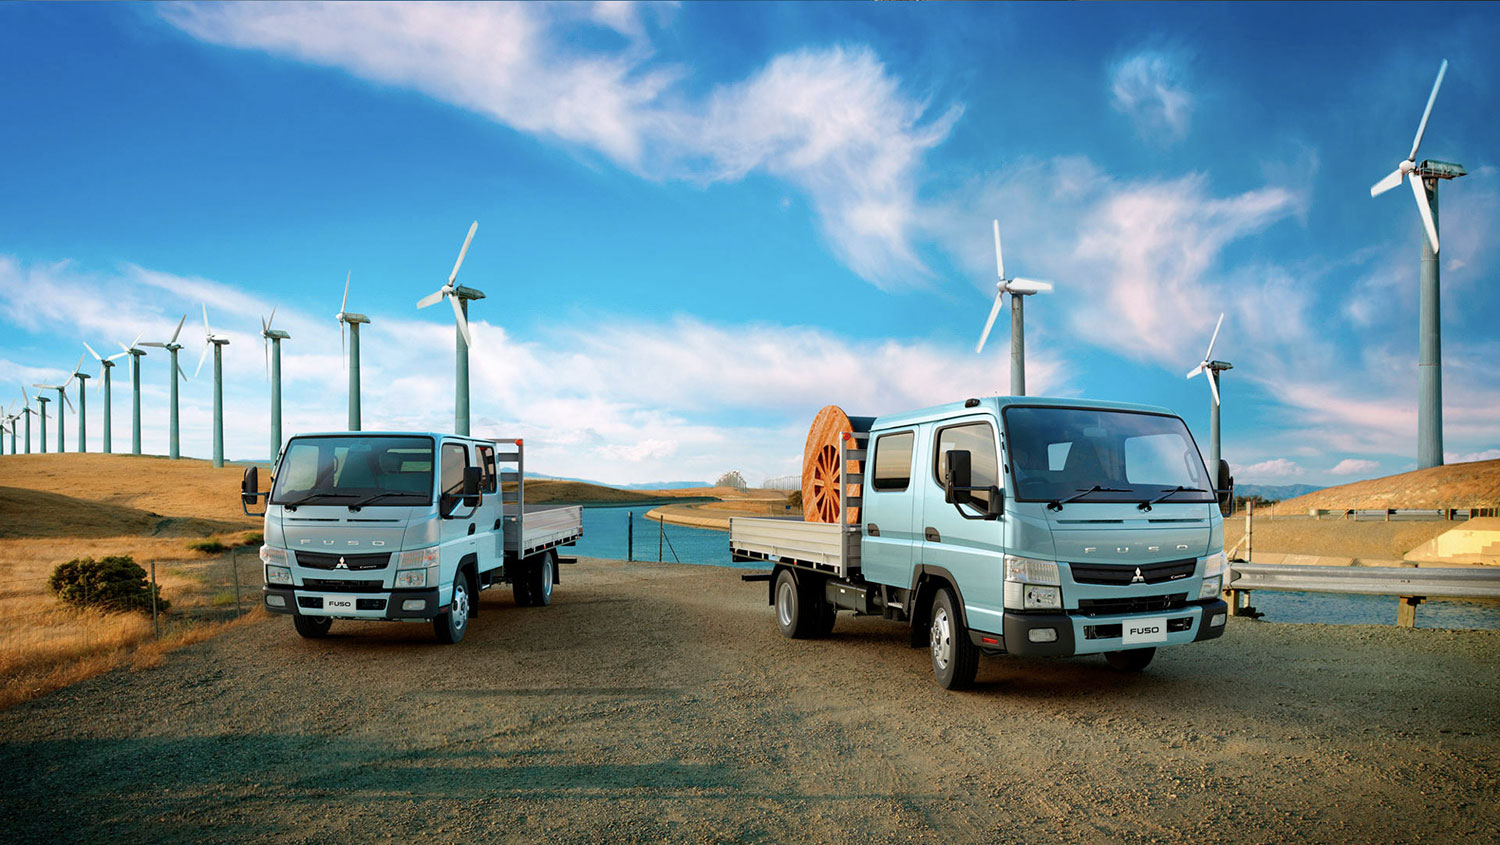 Camiones Canter 715 DC Celestes, cargando carretes industriales en un campo de energía eólica